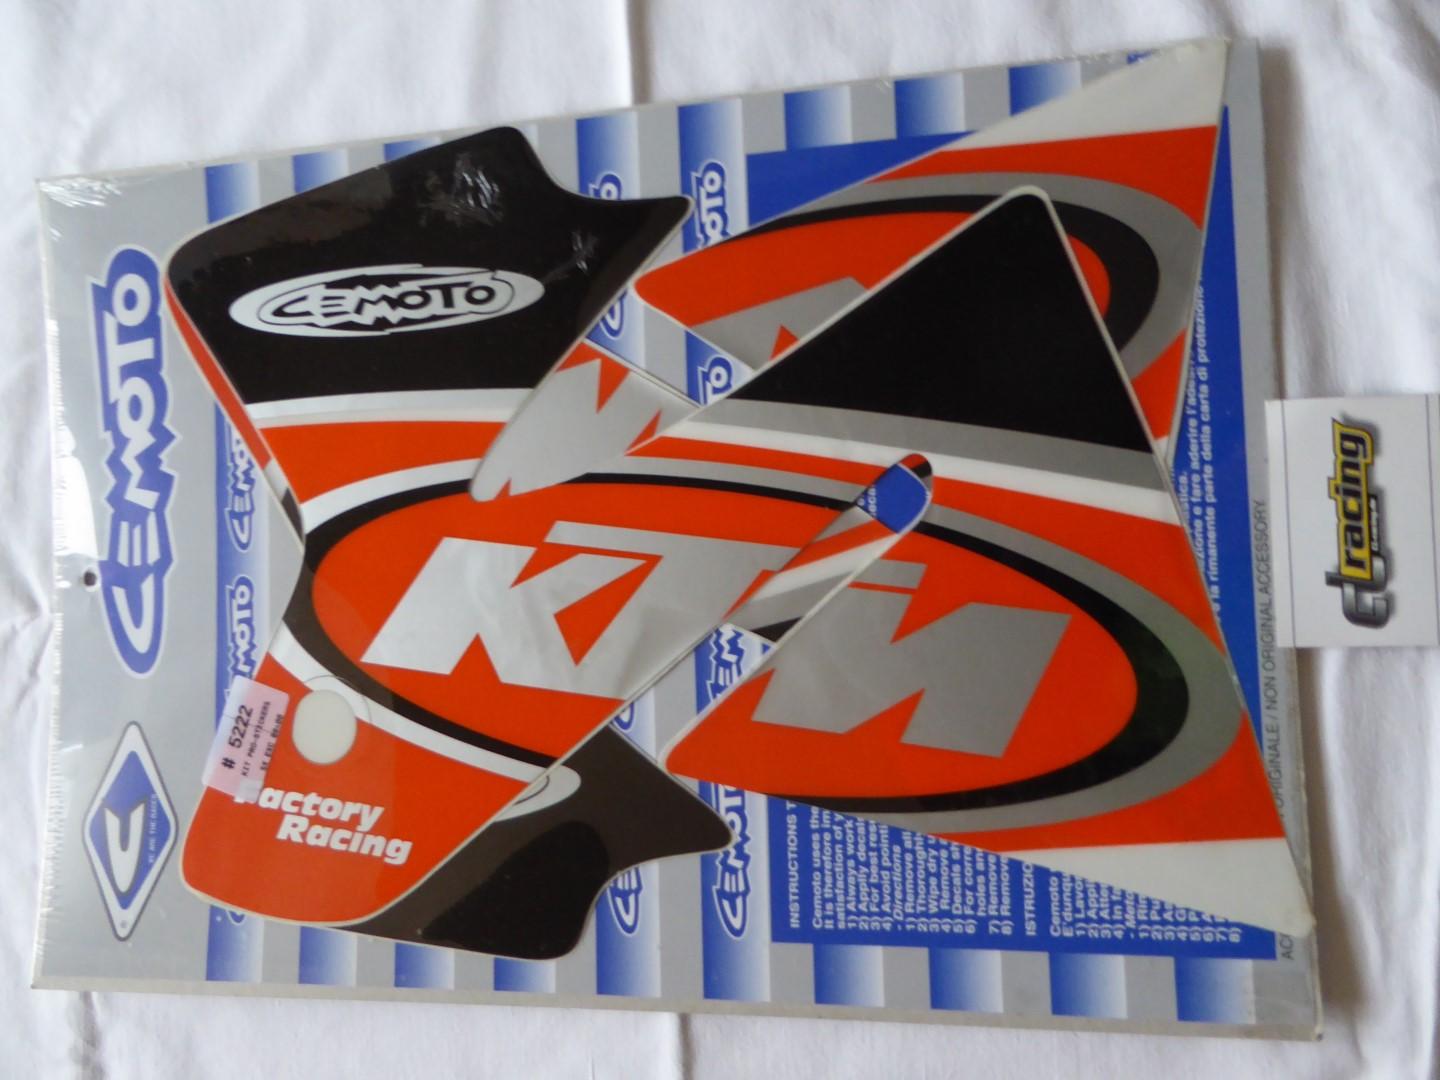 Dekorsatz Aufkleber Sticker Verkleidung graphic kit für Ktm Sx Exc 98-00 sw-or